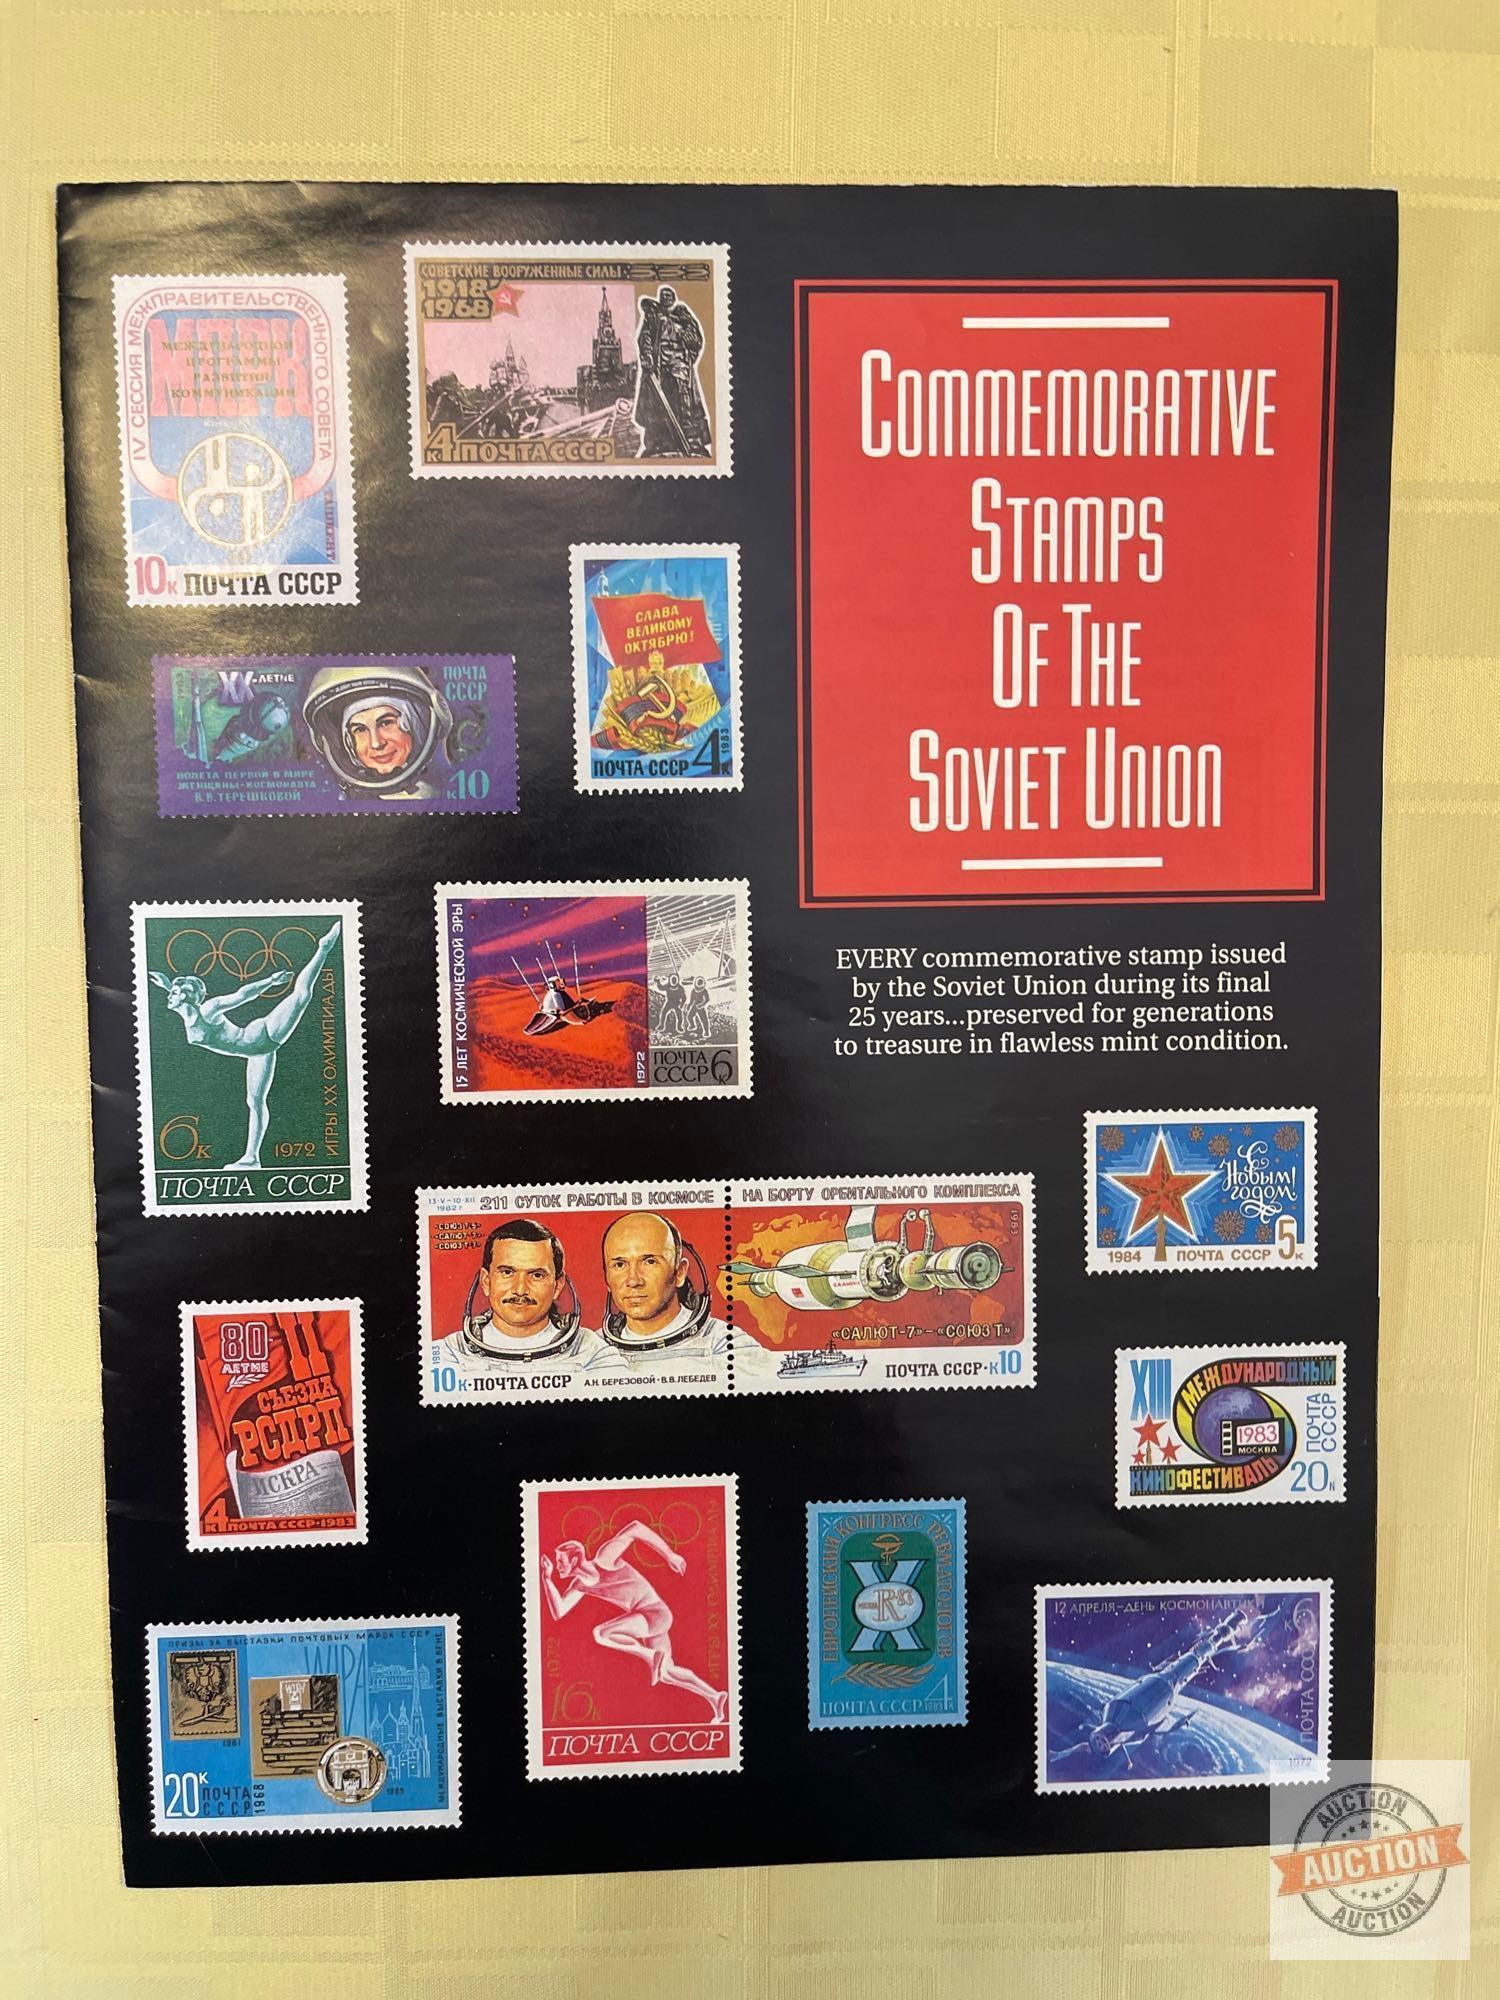 Stamp advertising brochures, ephemera